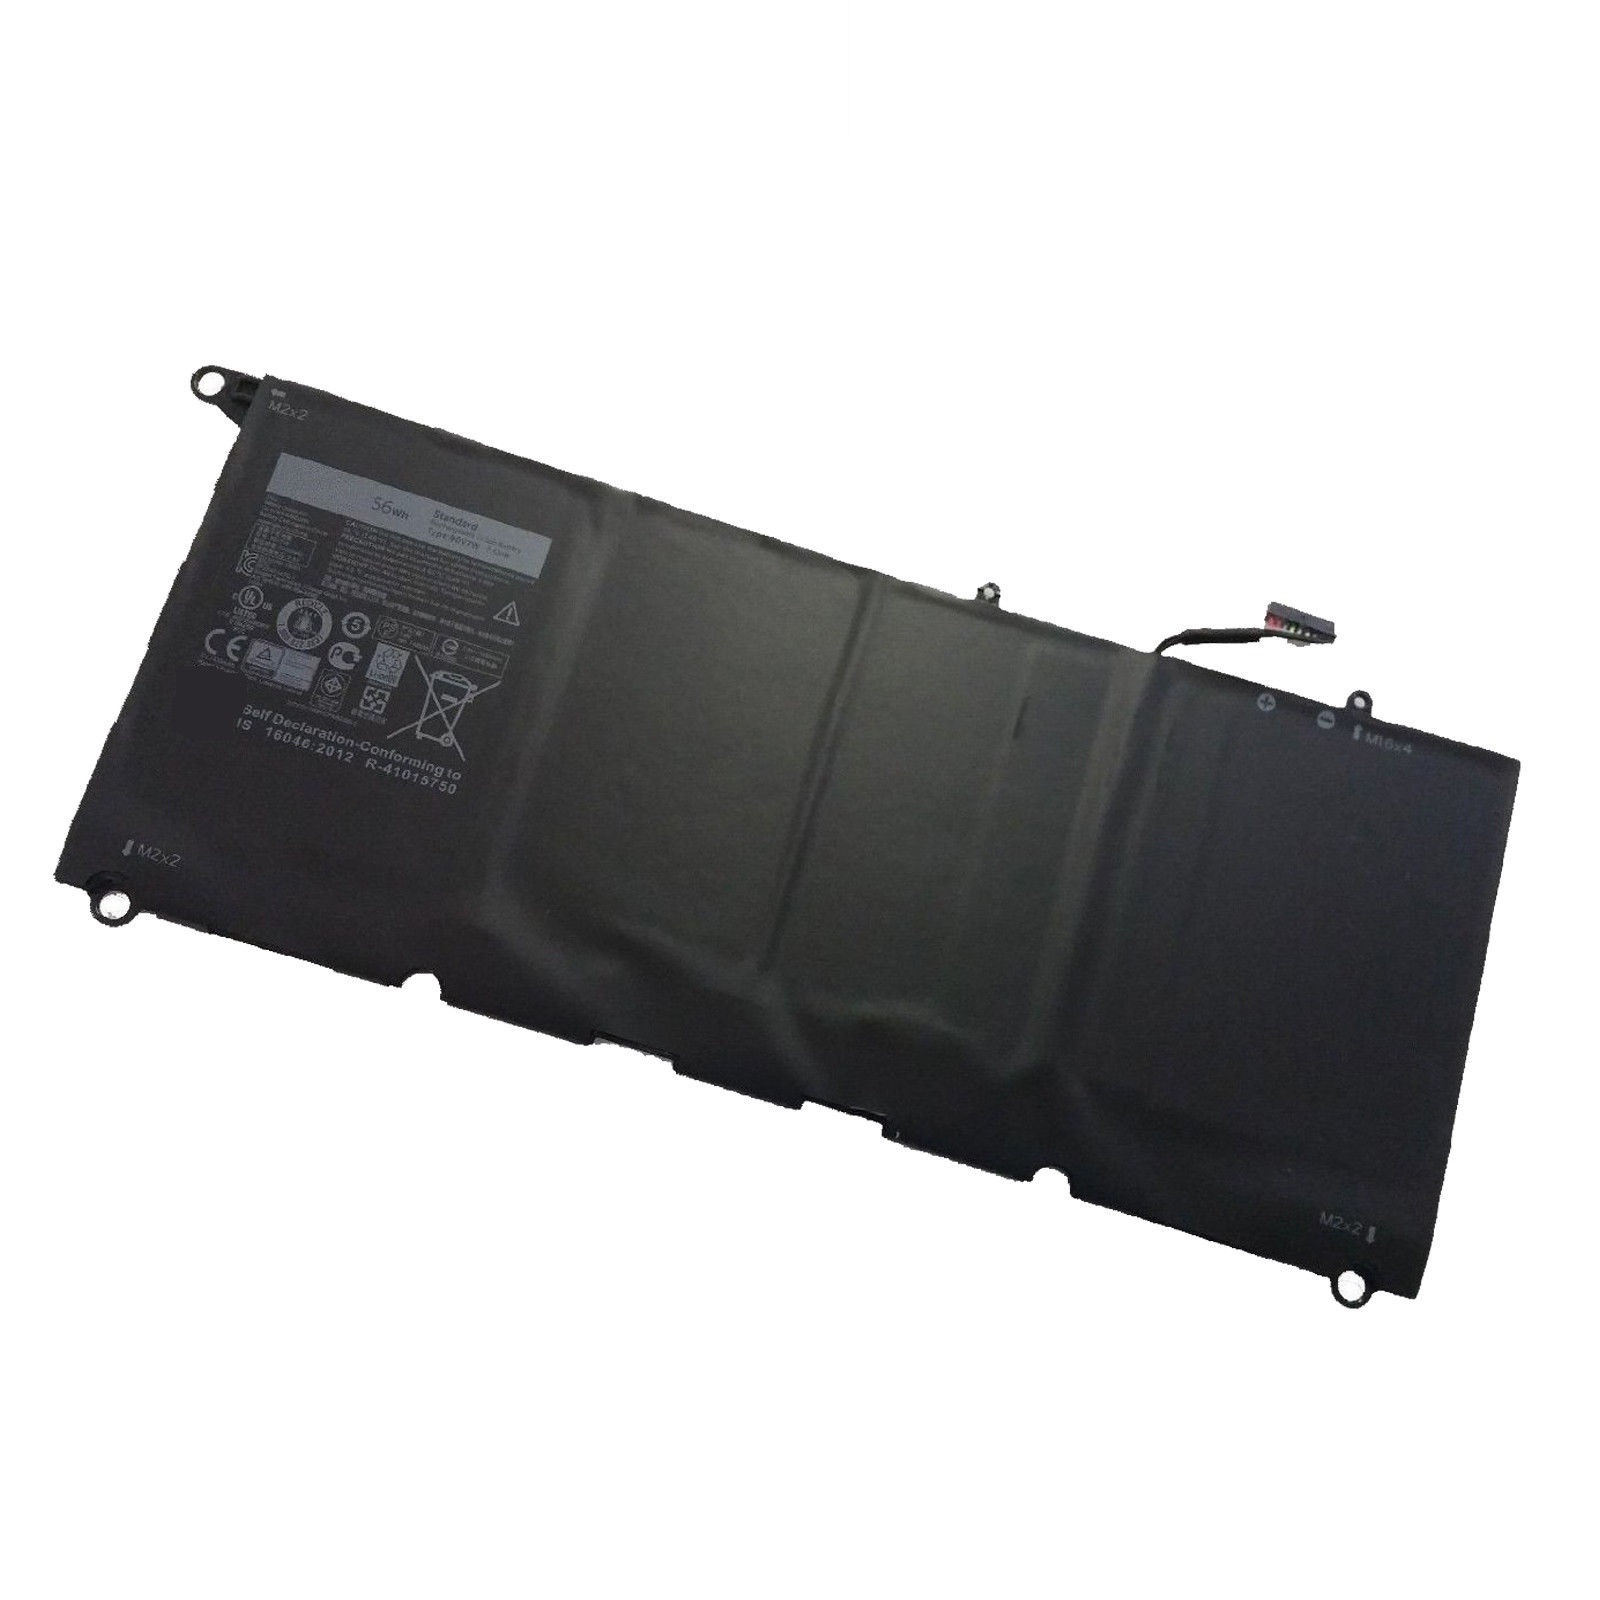 μπαταρία για Dell XPS 13 9350 52Wh 0DRRP 0JD25G συμβιβάσιμος